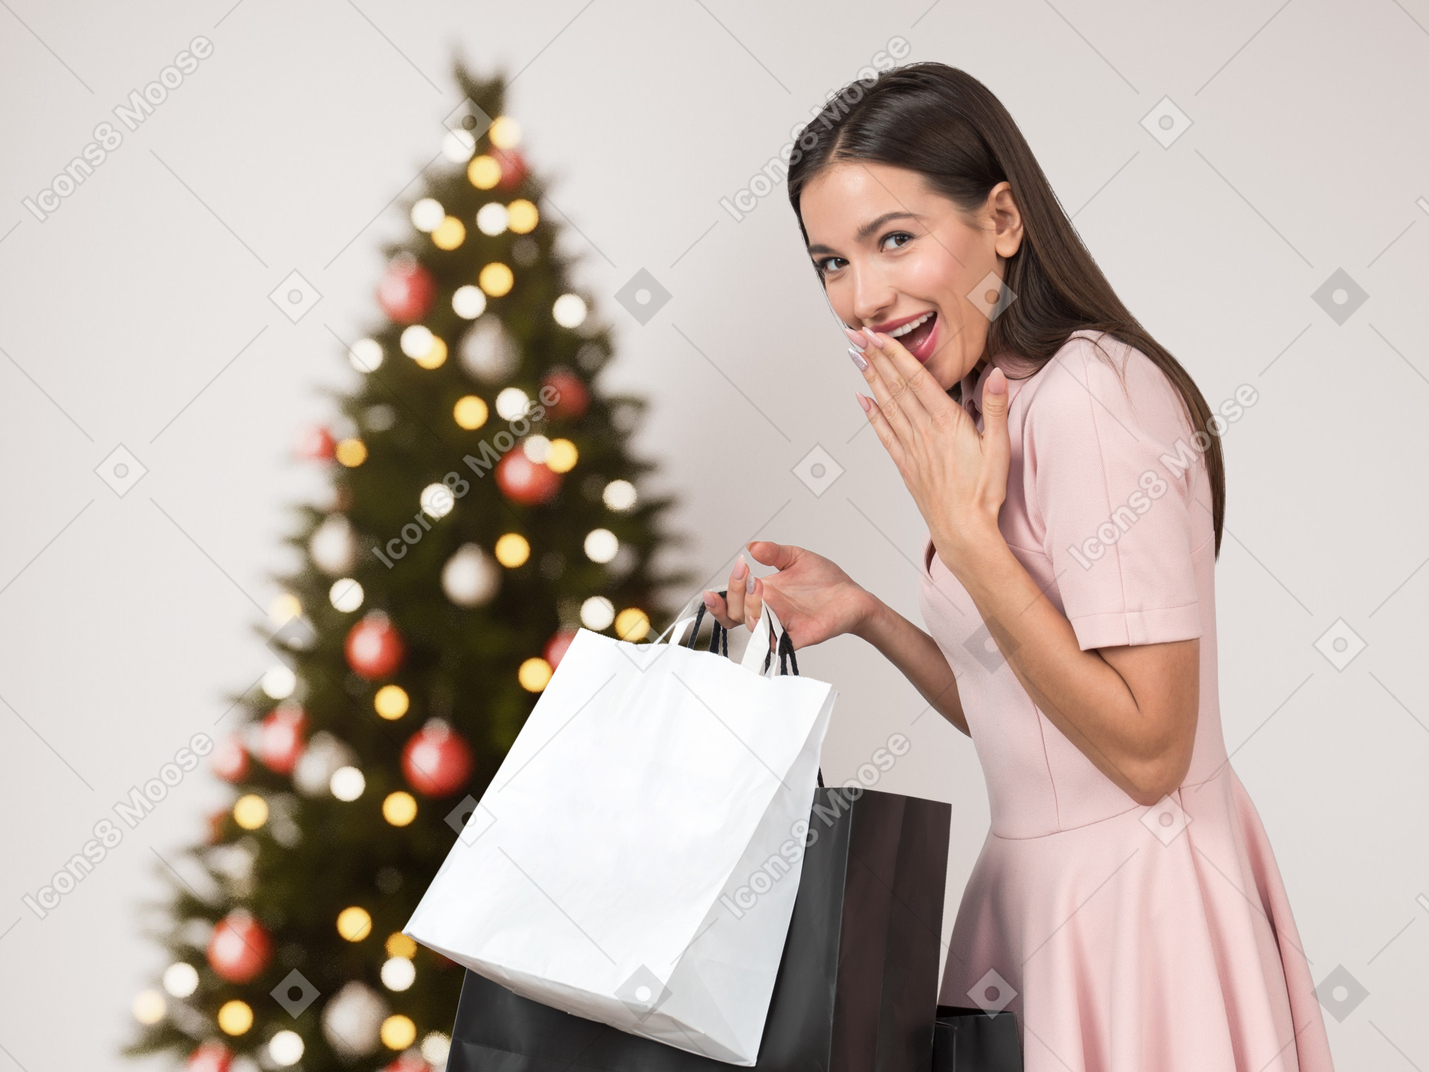 크리스마스 트리 근처에 서 있는 쇼핑백을 든 젊은 여자